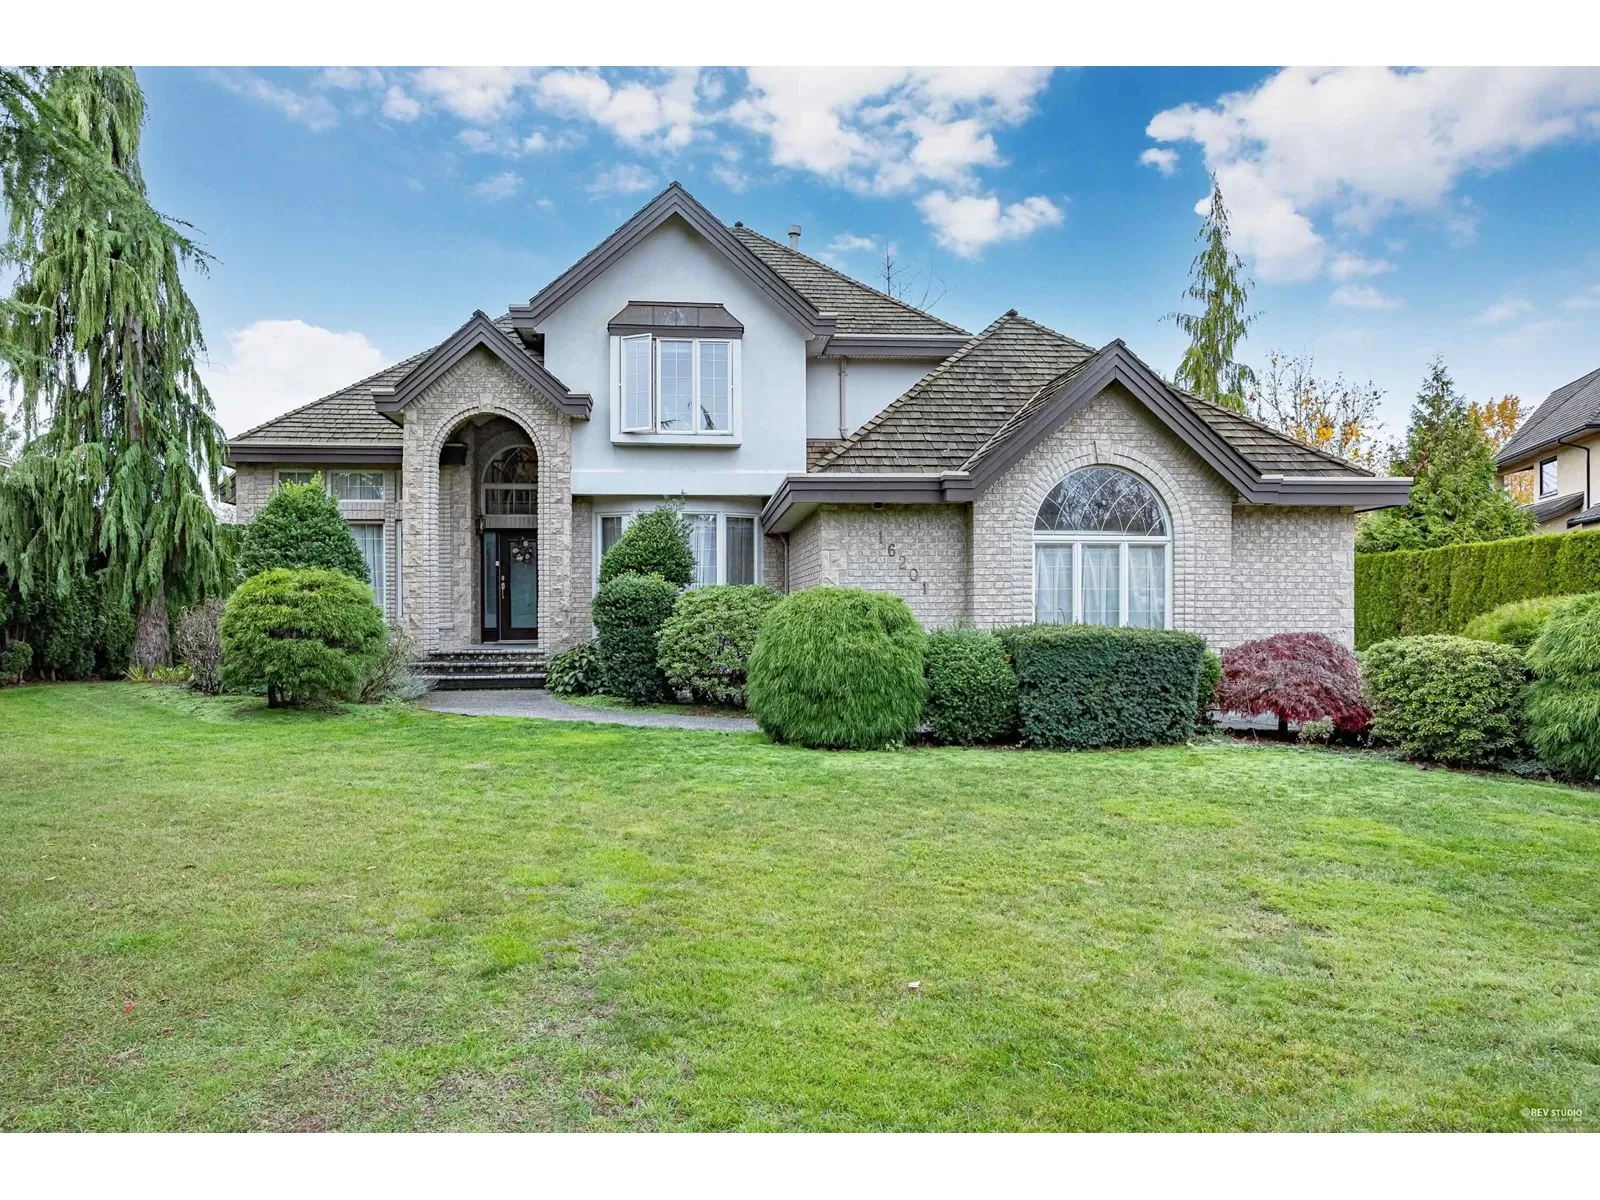 House for rent: 16201 Morgan Creek Crescent, Surrey, British Columbia V3Z 0J2